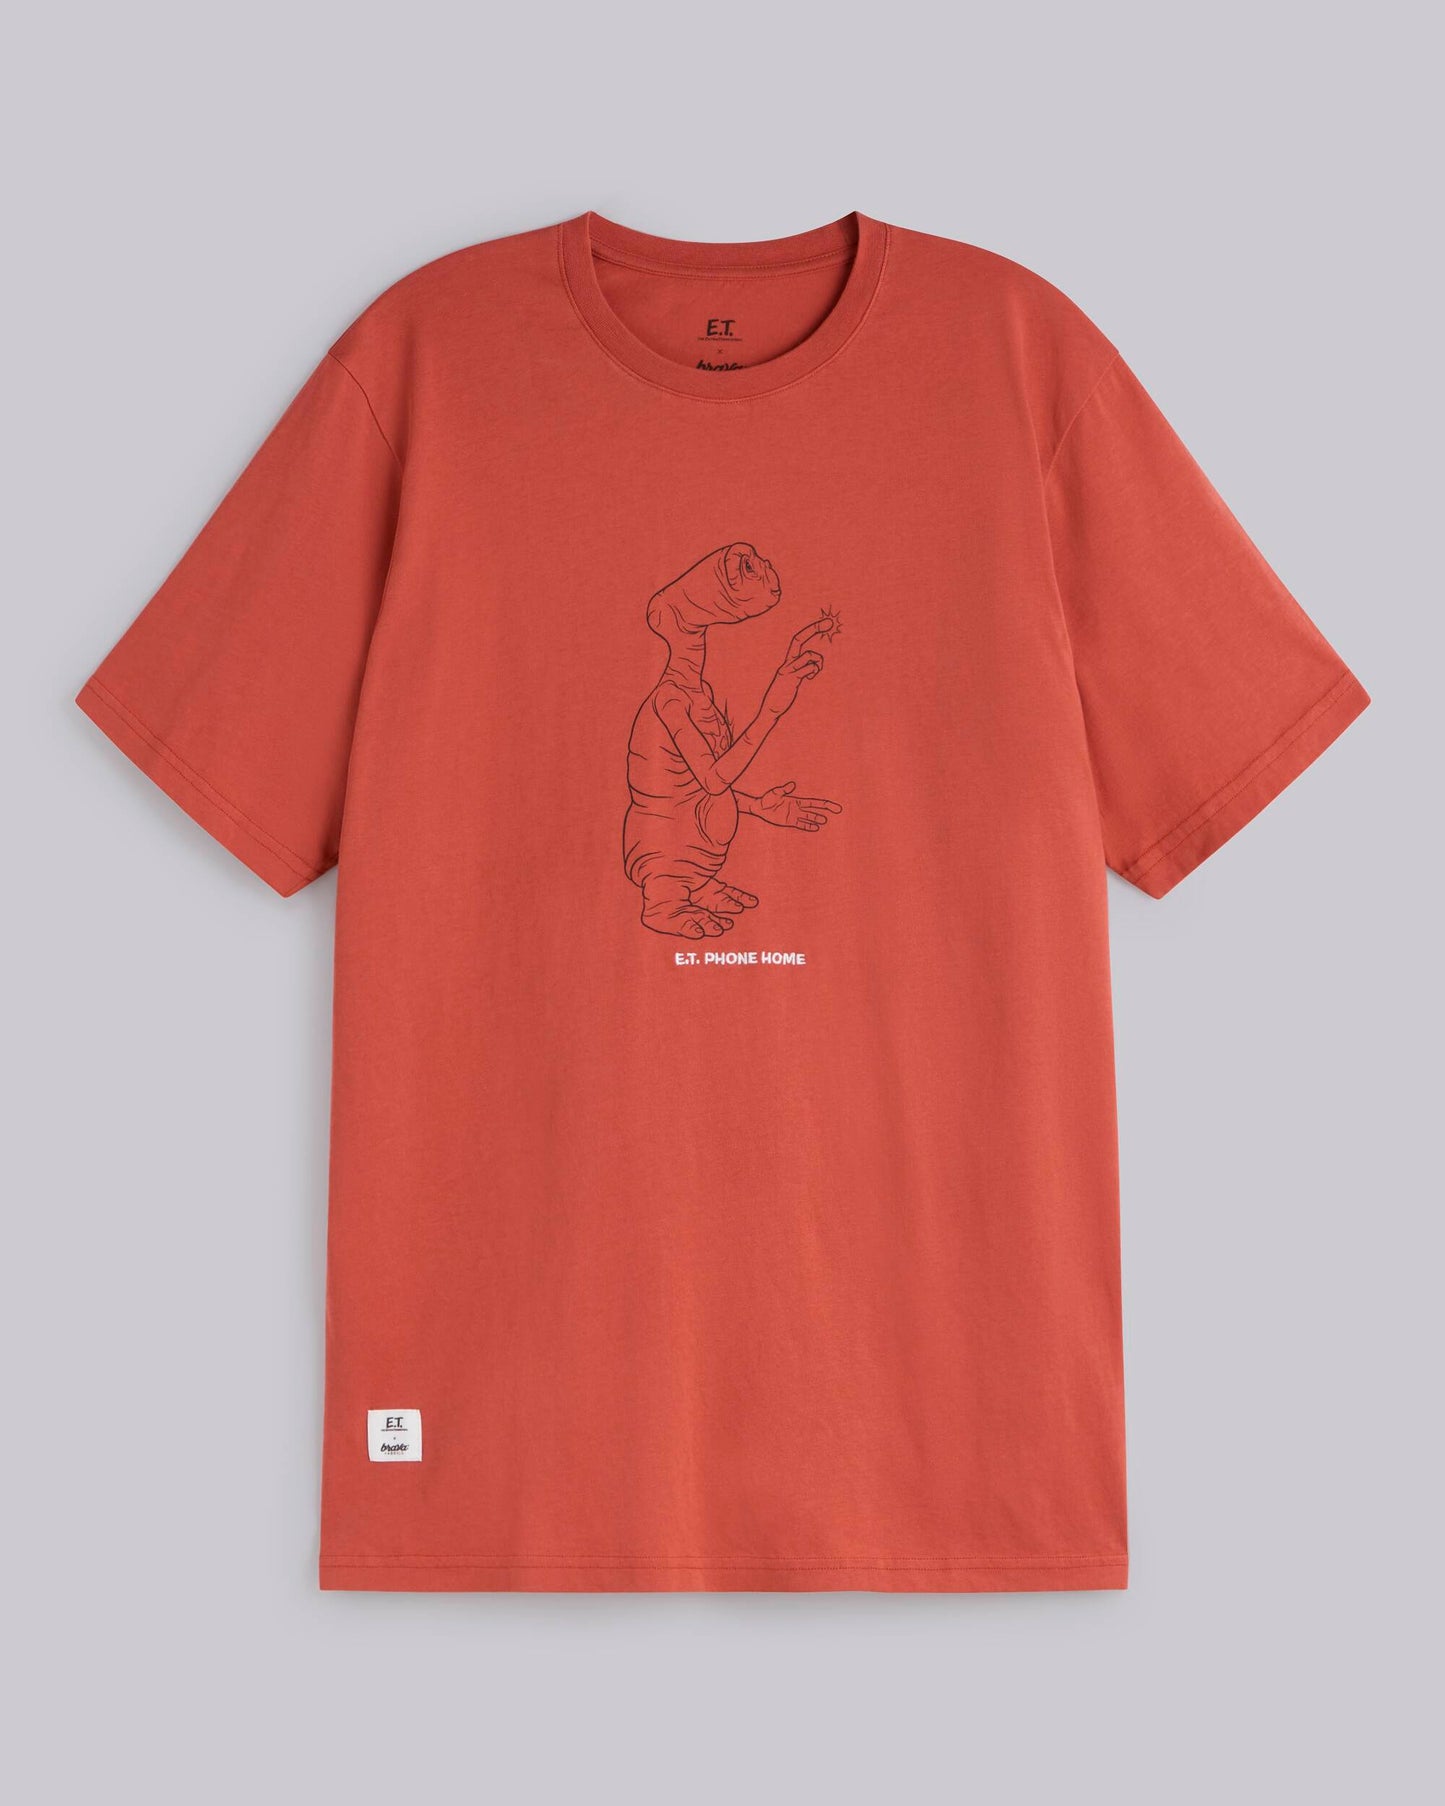 E.T. Phone Home T-shirt